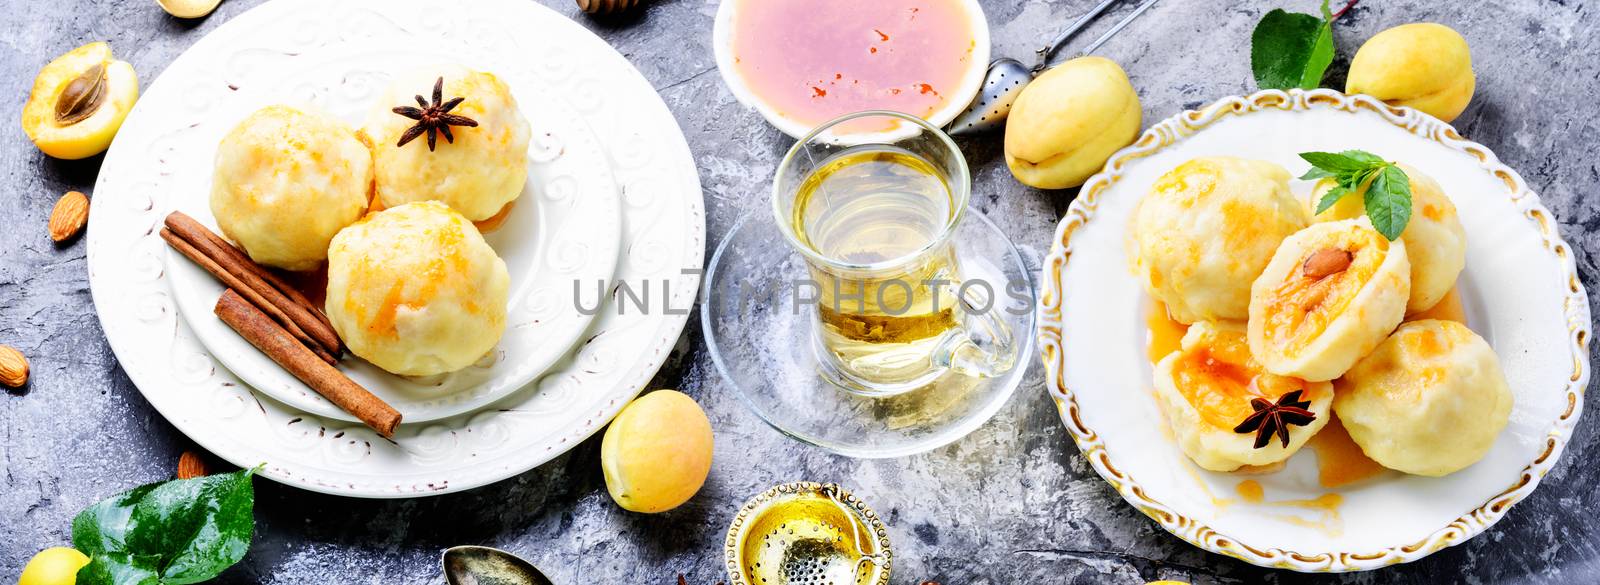 Fruit dumplings with apricot by LMykola